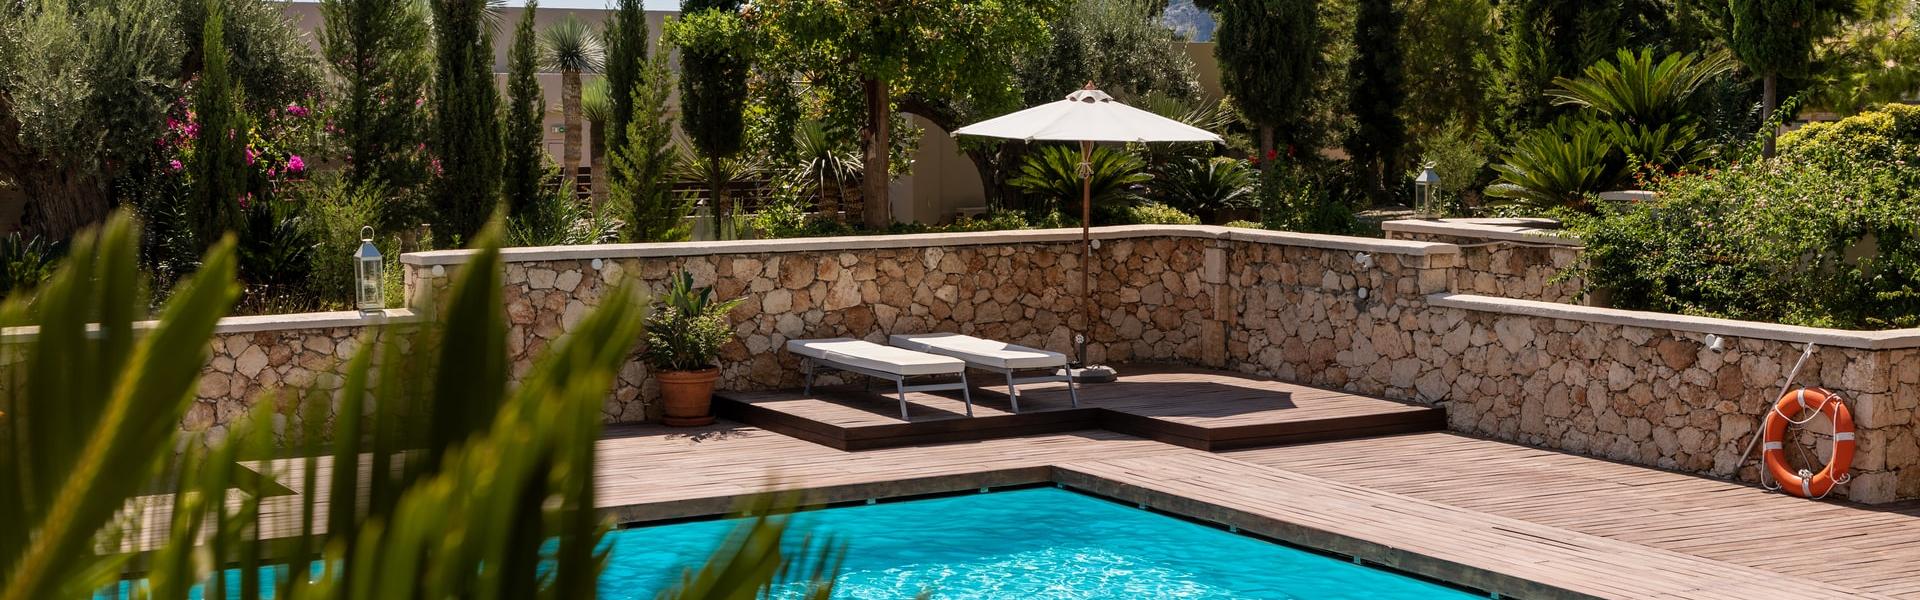 Ferienhaus mit Pool auf Formentera - Wimdu